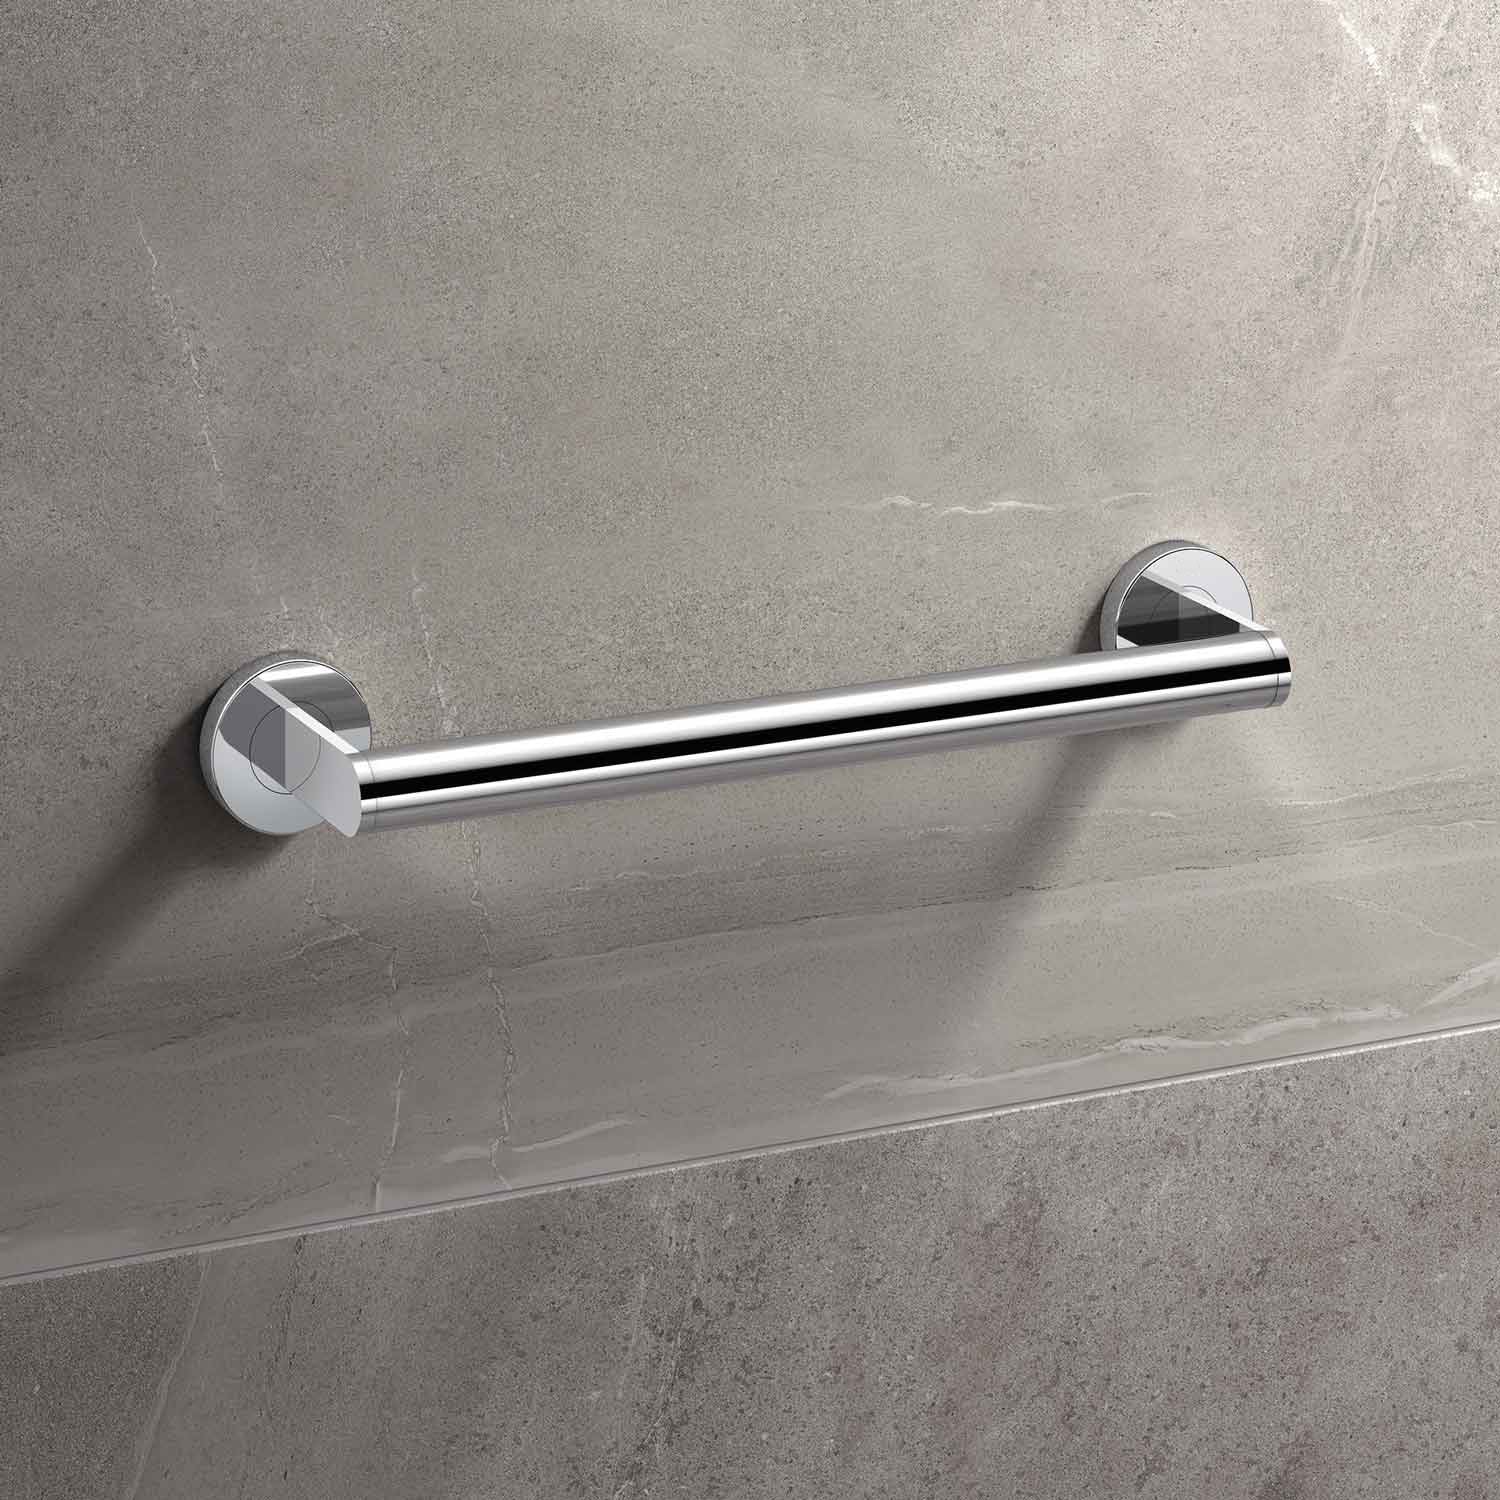 A Fine & Able chrome finish grab rail on a tiled bathroom wall